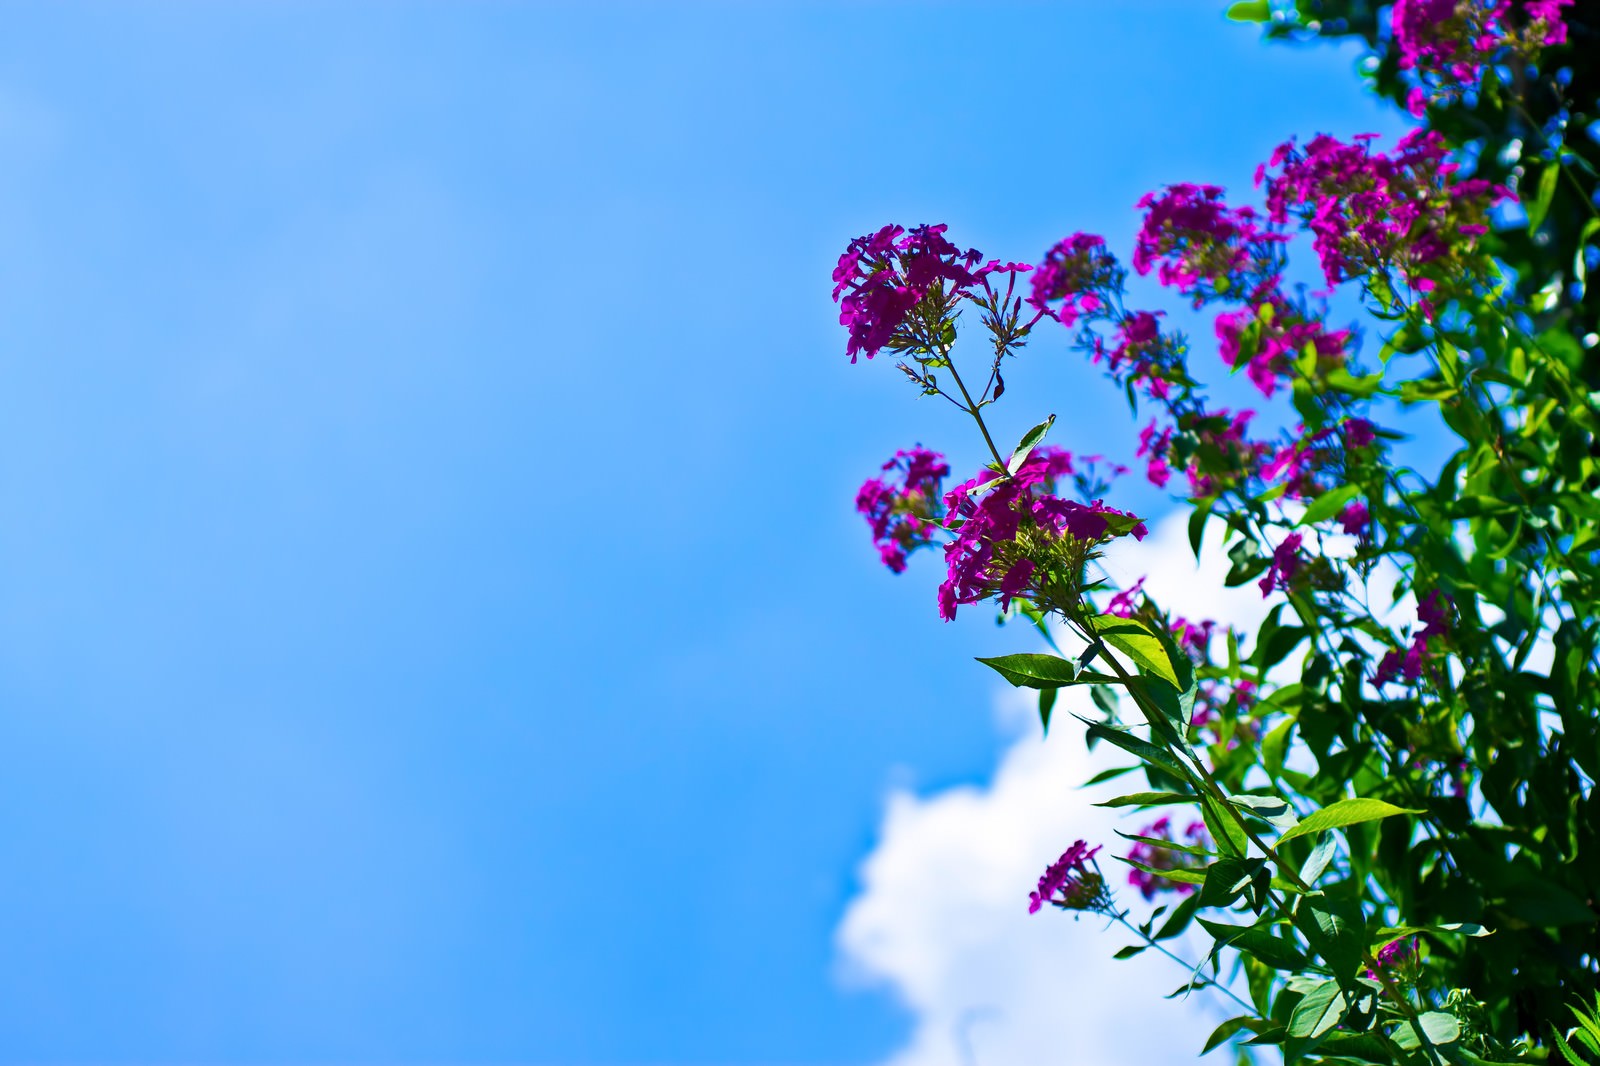 「真夏の青空と紫の花 | フリー素材のぱくたそ」の写真